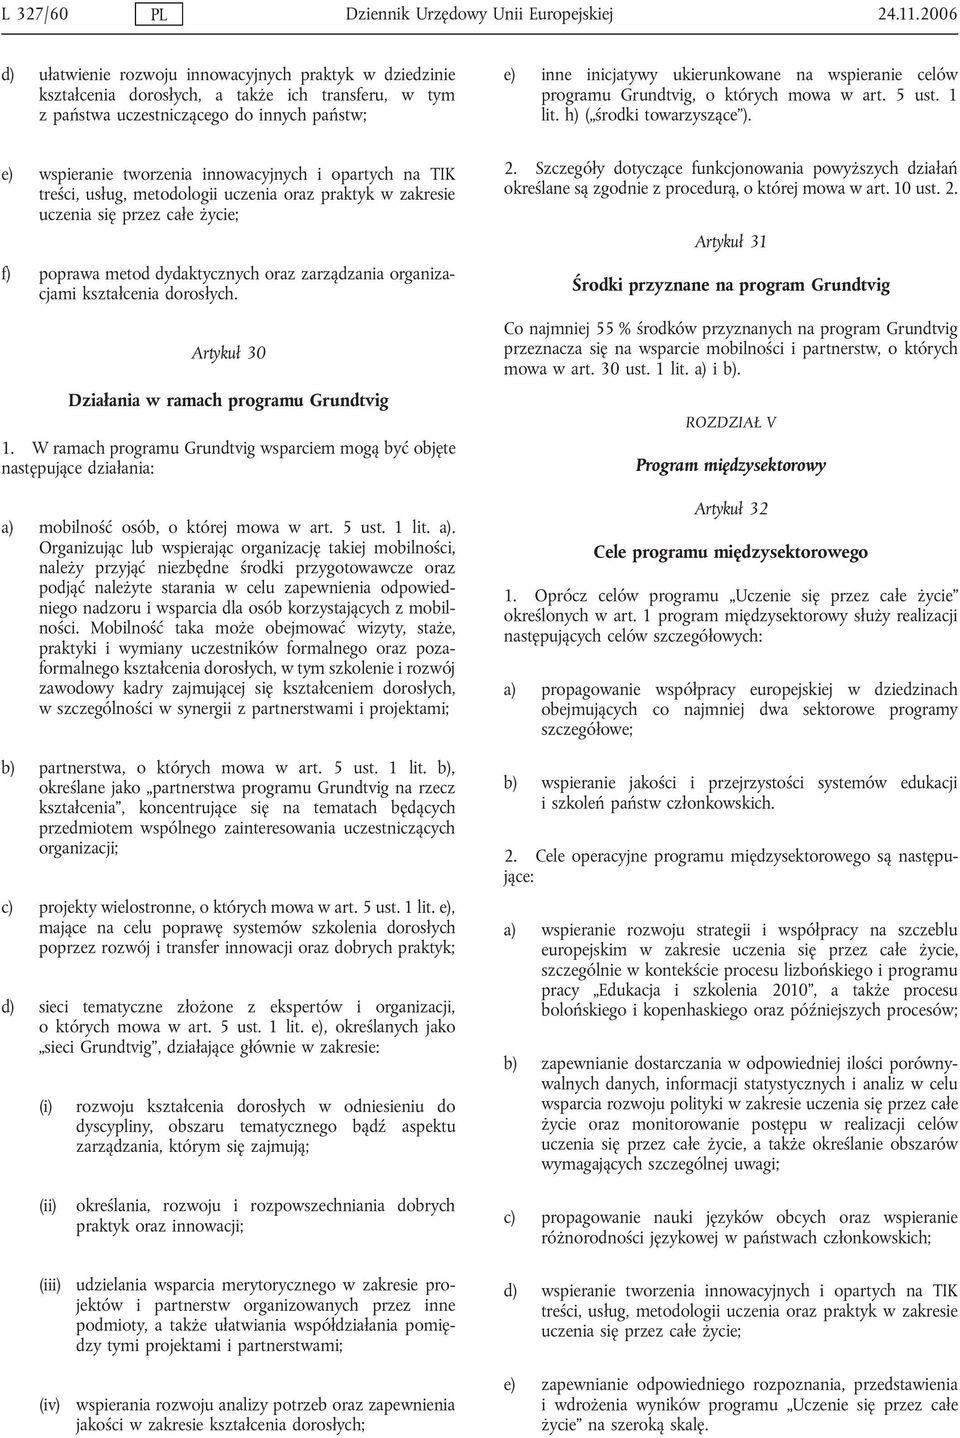 wspieranie celów programu Grundtvig, o których mowa w art. 5 ust. 1 lit. h) ( środki towarzyszące ).